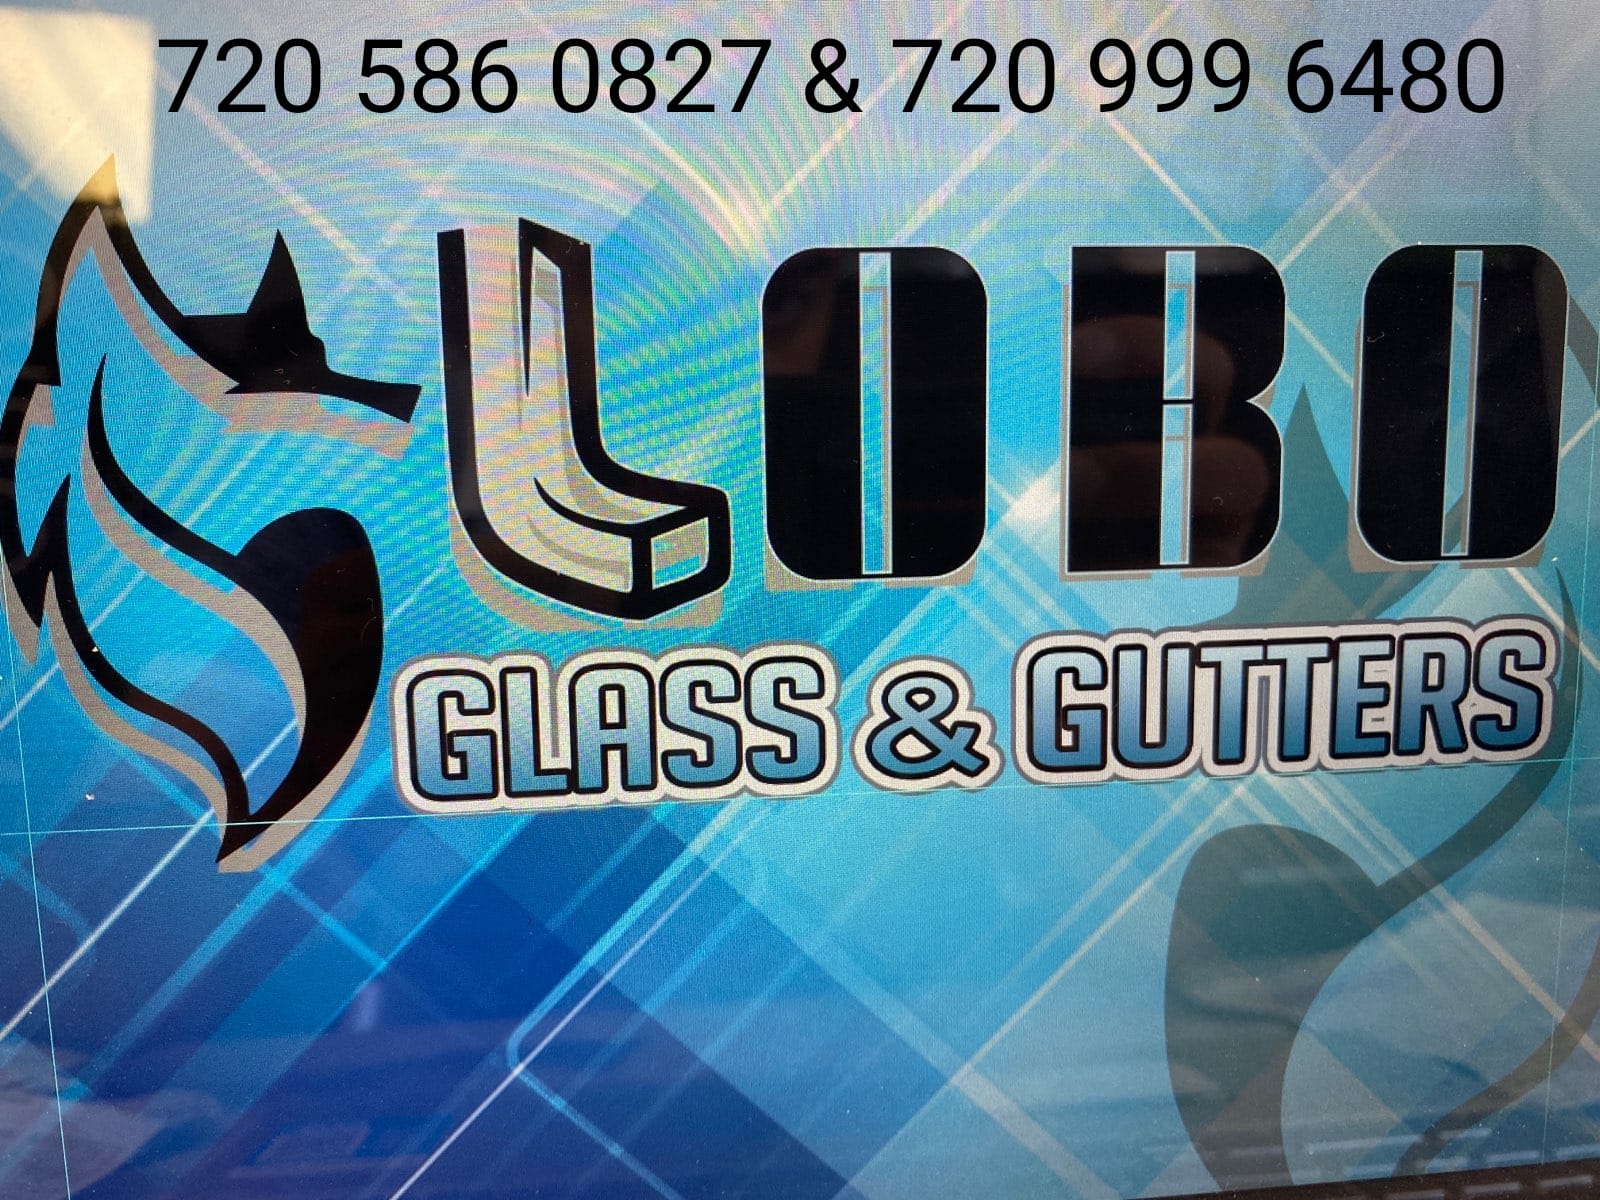 Lobo Seamless Gutters Logo